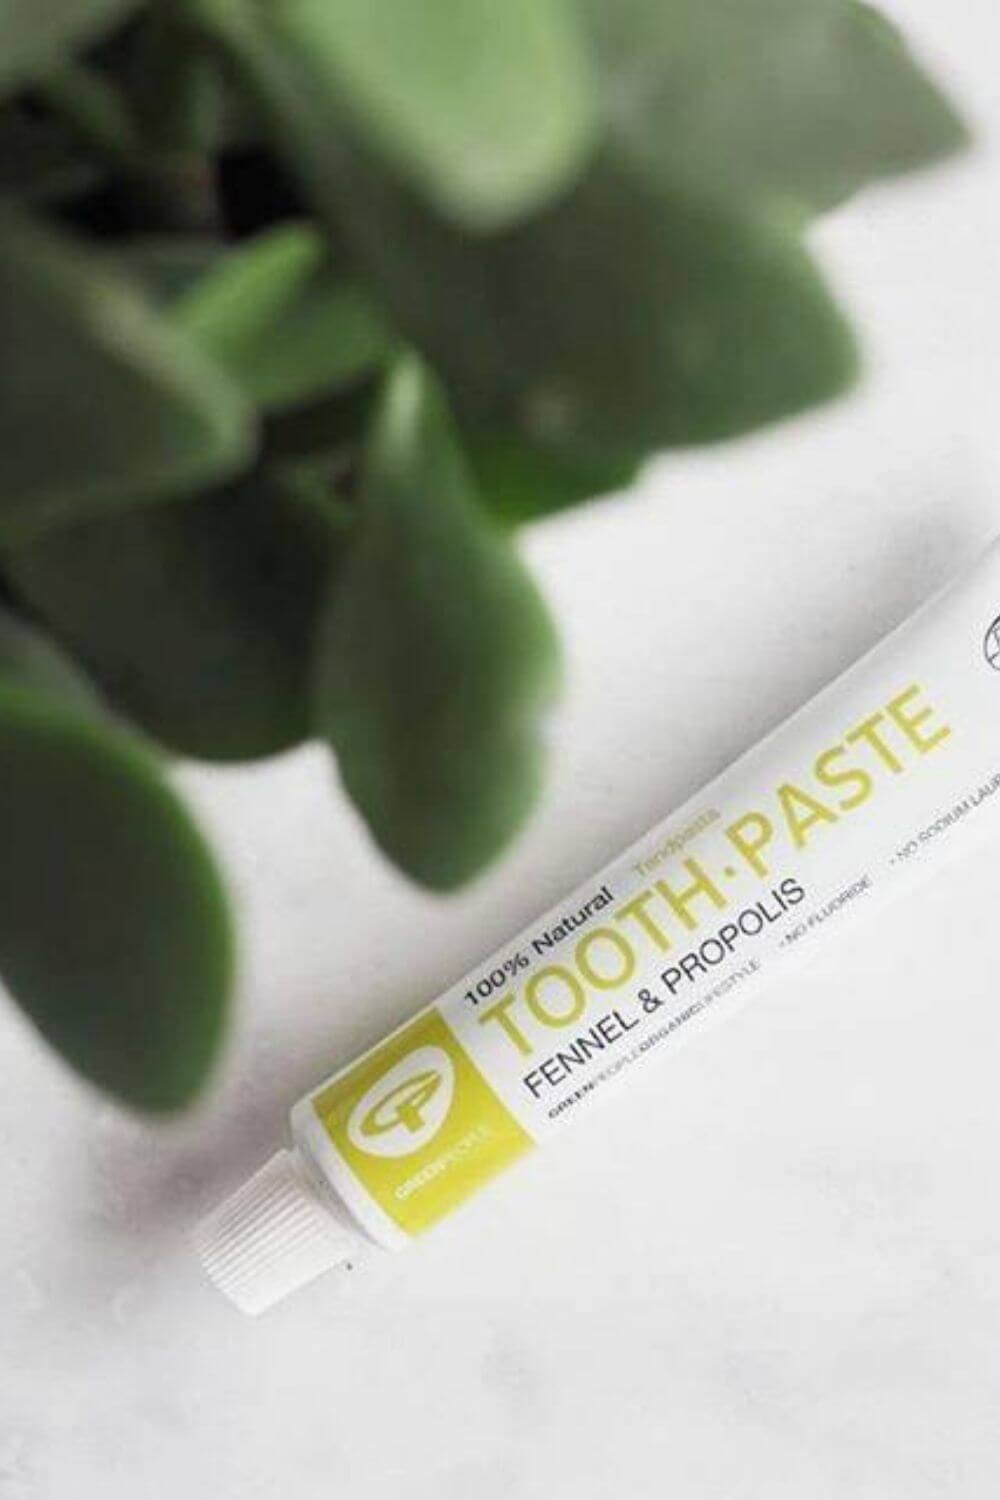 牙膏可能是最常使用的身体护理产品，这就是为什么它是我们仔细研究的第一批可持续的、无残酷的牙膏替代品之一……图片来源:绿色人有机#无残忍牙膏#素食牙膏#可持续丛林